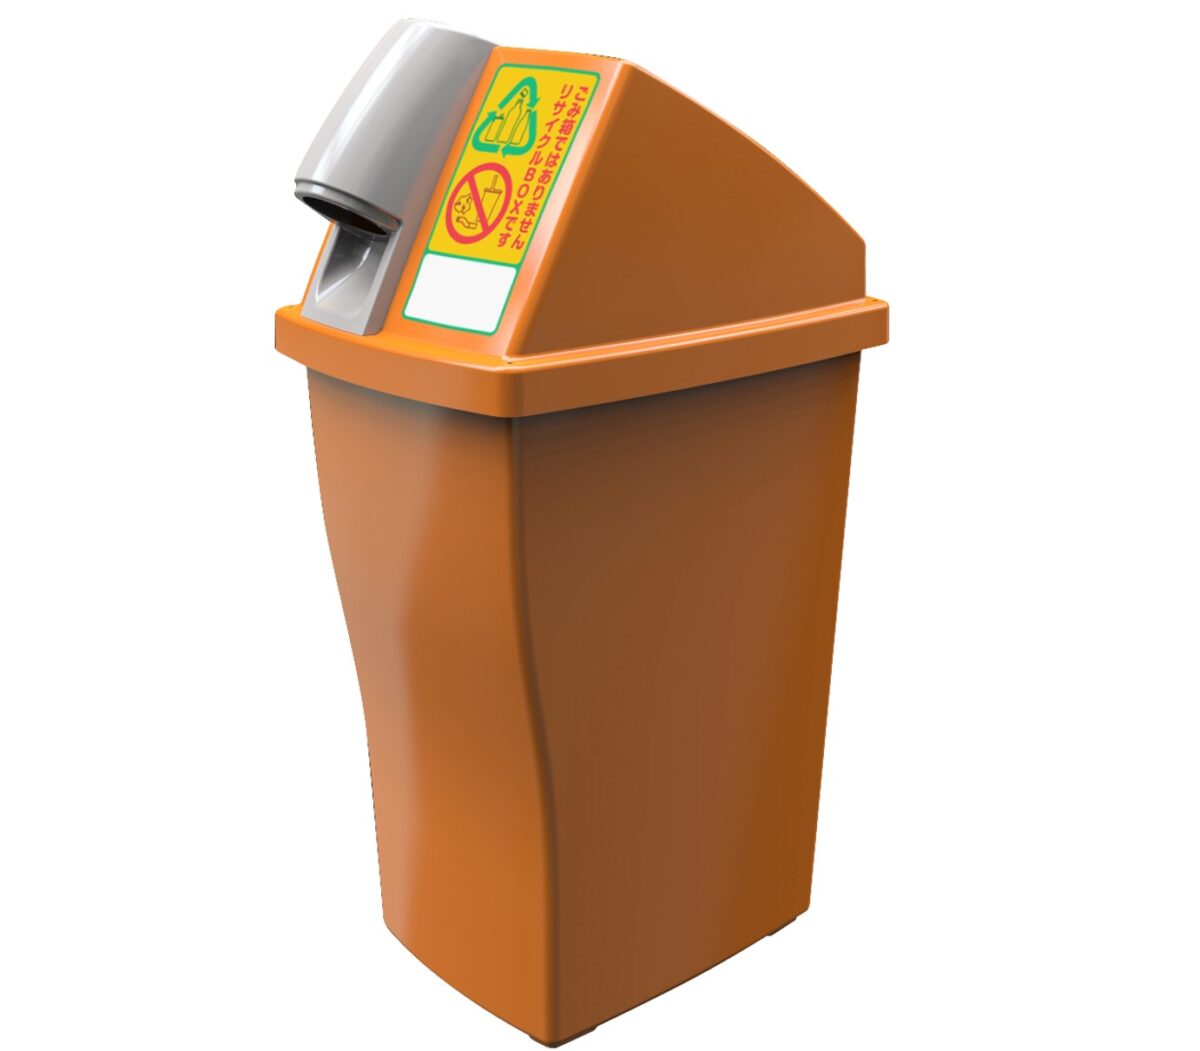 自販機横リサイクルボックス業界統一仕様に　下向きの投入口とオレンジのカラーでペットボトル100％回収を推進